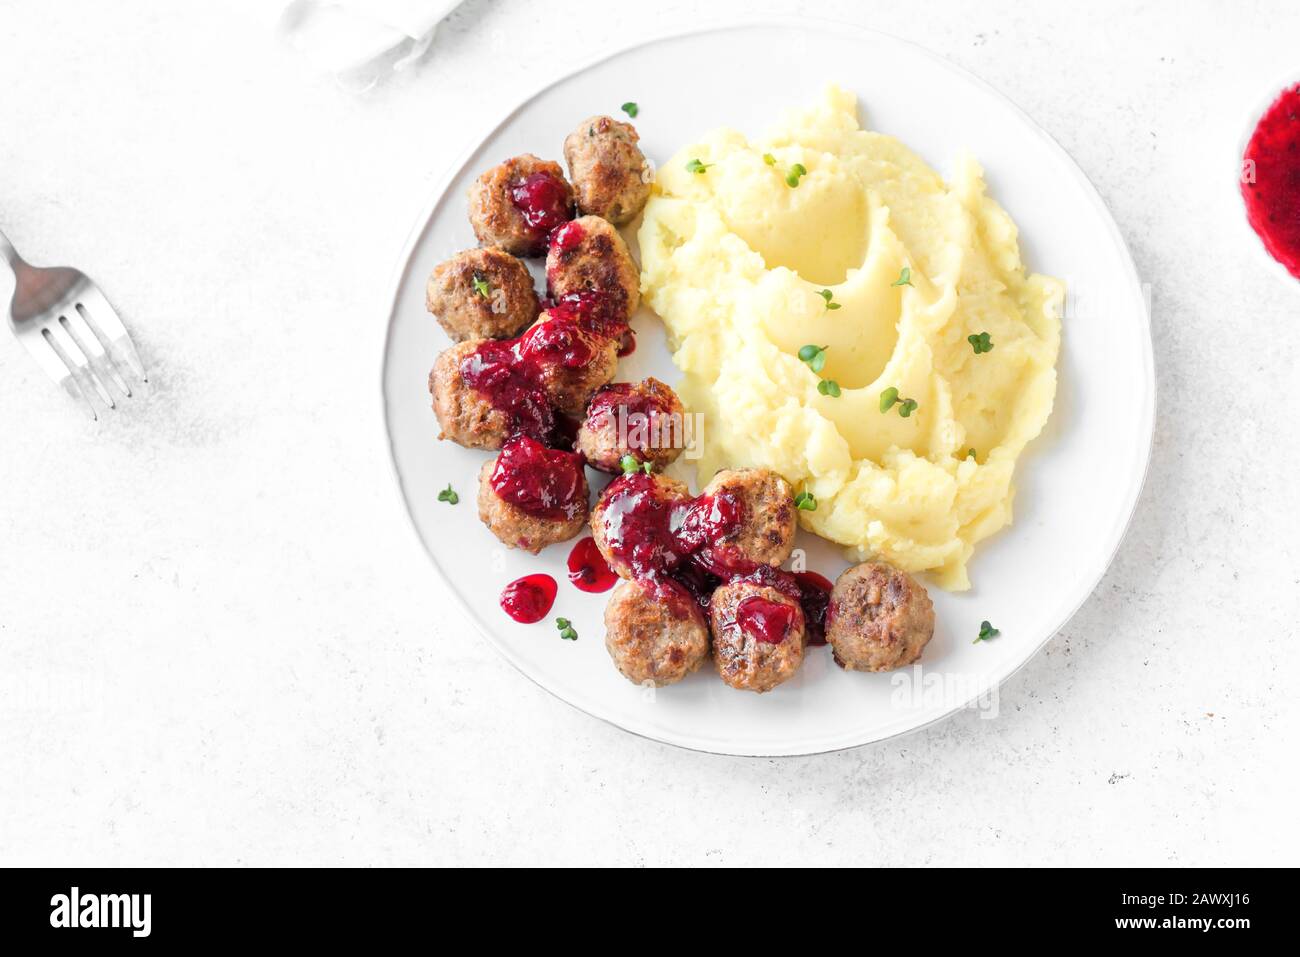 Traditionelle schwedische Fleischbällchen mit Kartoffelpüree und Lingonberry-Sauce, weißer Hintergrund. Geröstete Fleischbällchen, skandinavische Komfortnahrung. Stockfoto